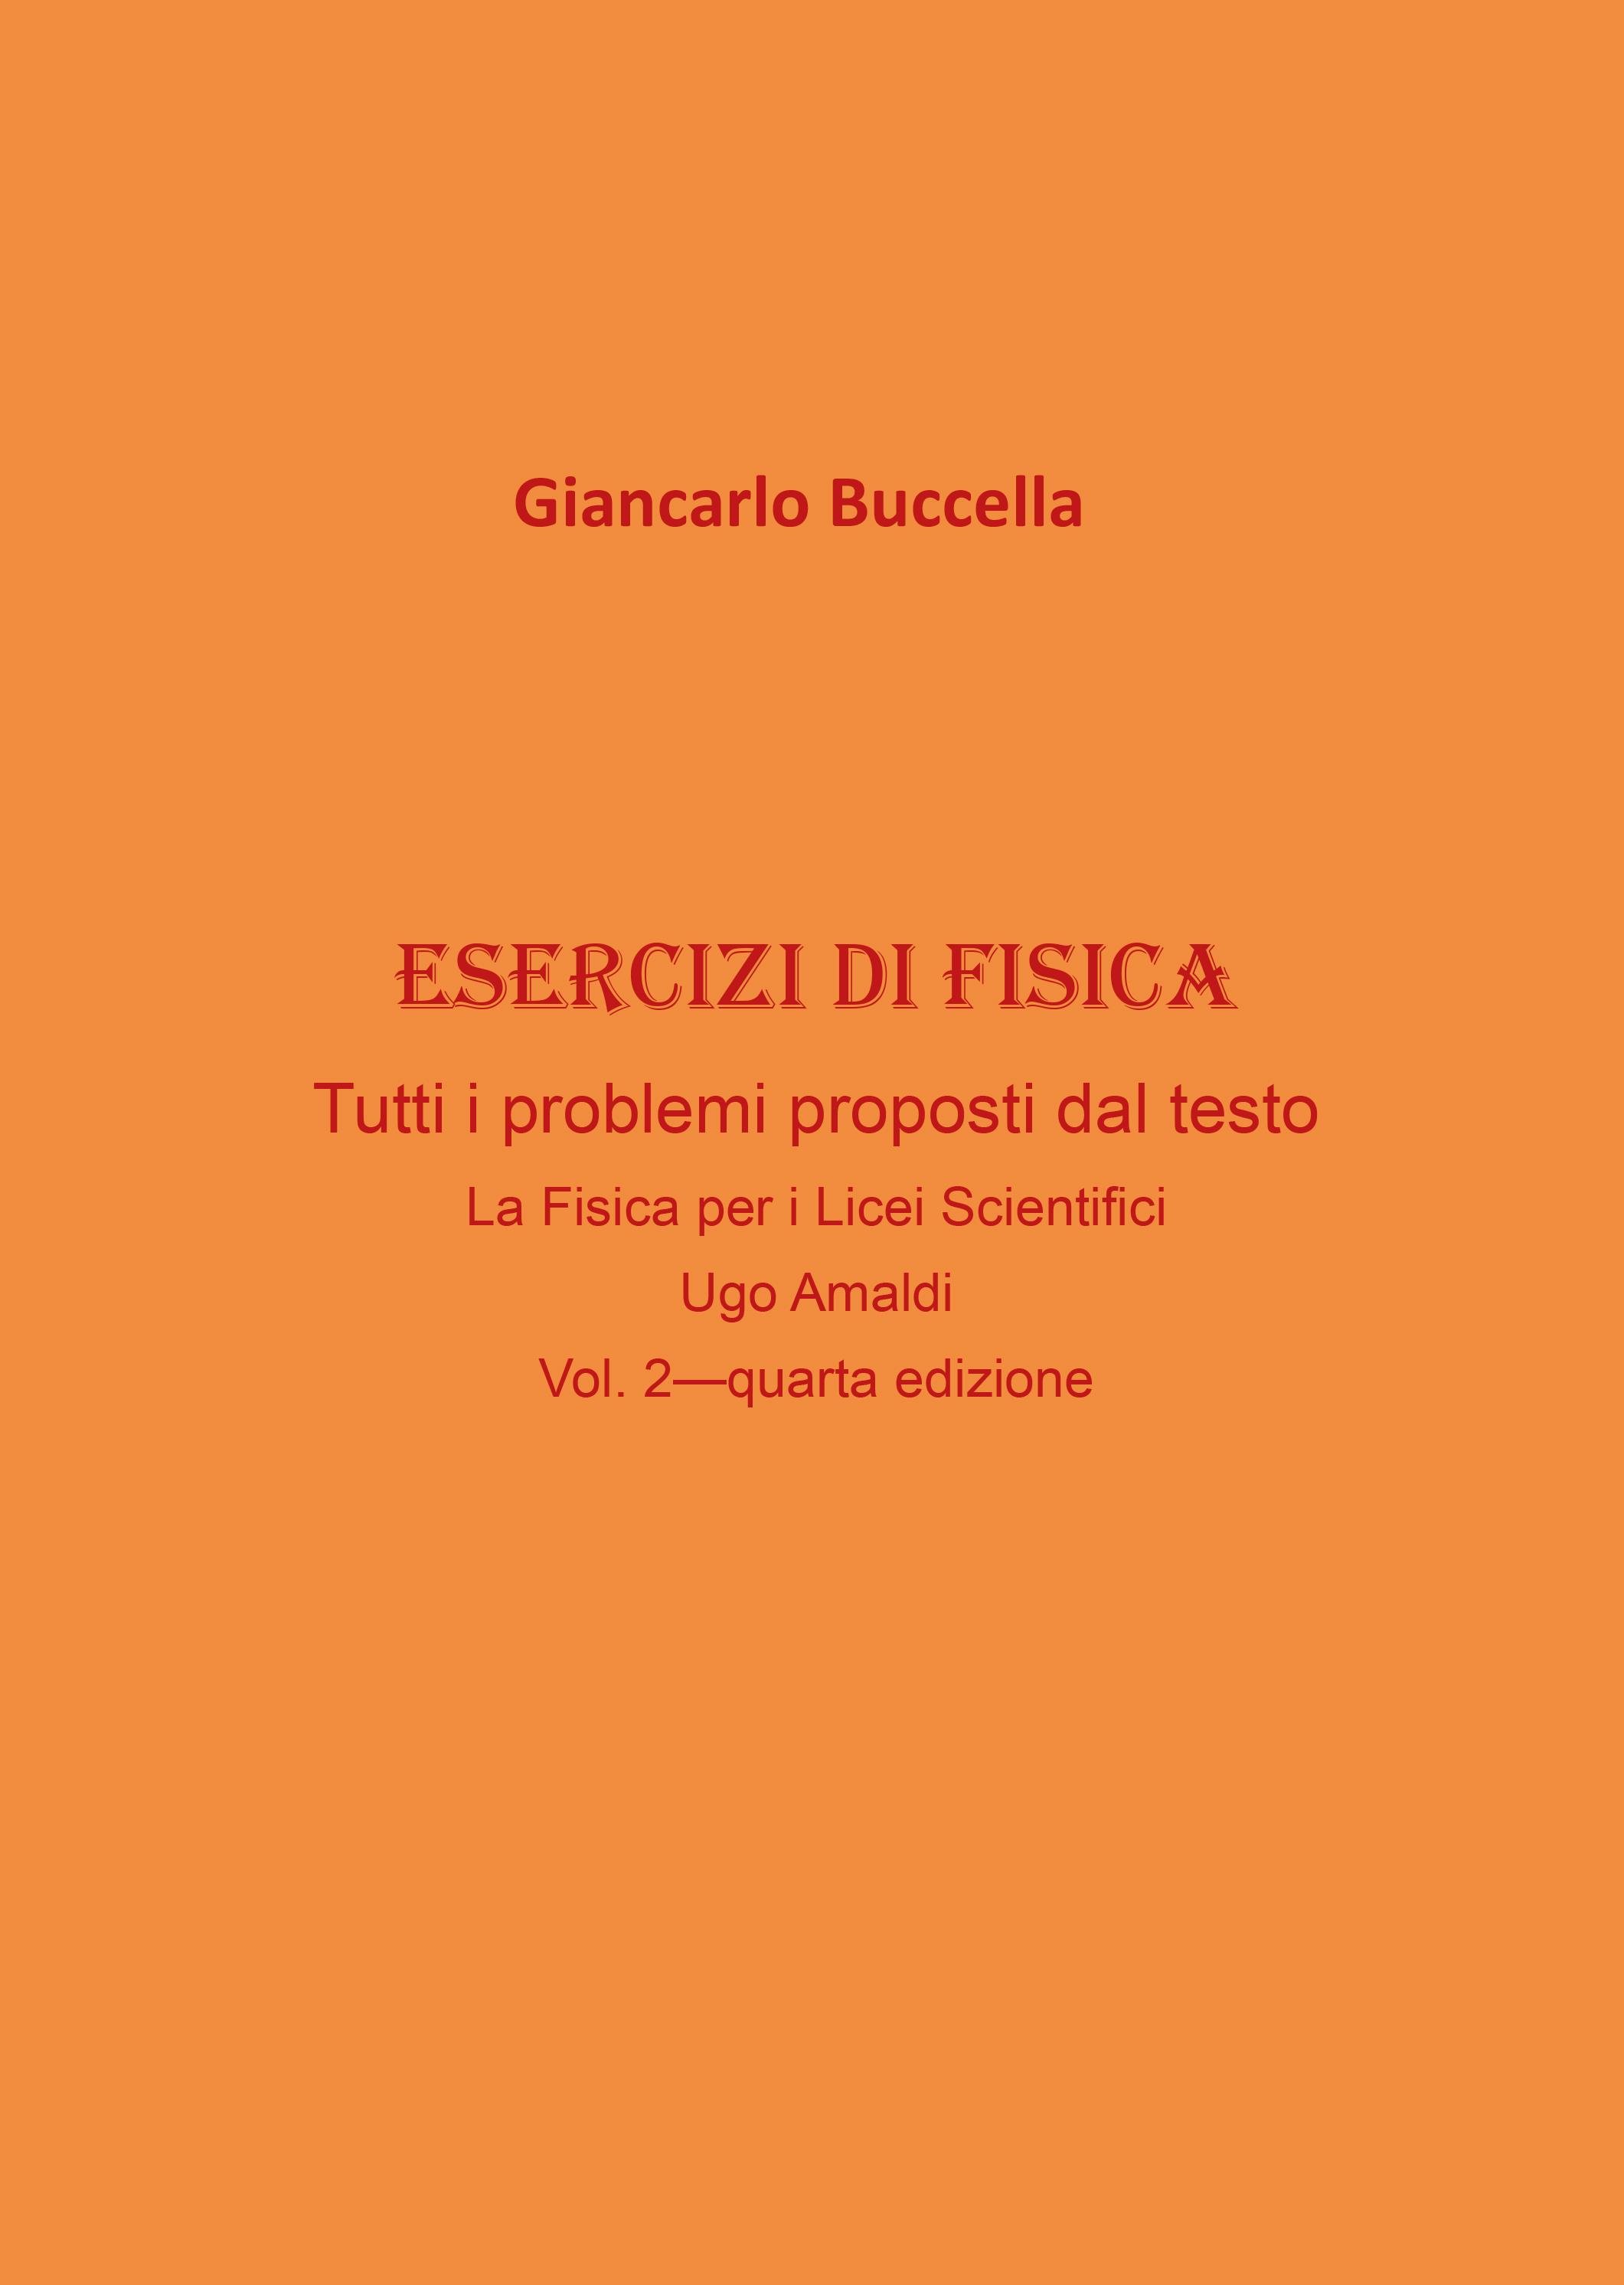 Esercizi di Fisica – tutti i problemi proposti dal testo  “La Fisica per i Licei Scientifici” di Ugo Amaldi - Vol. 2 (quarta edizione)